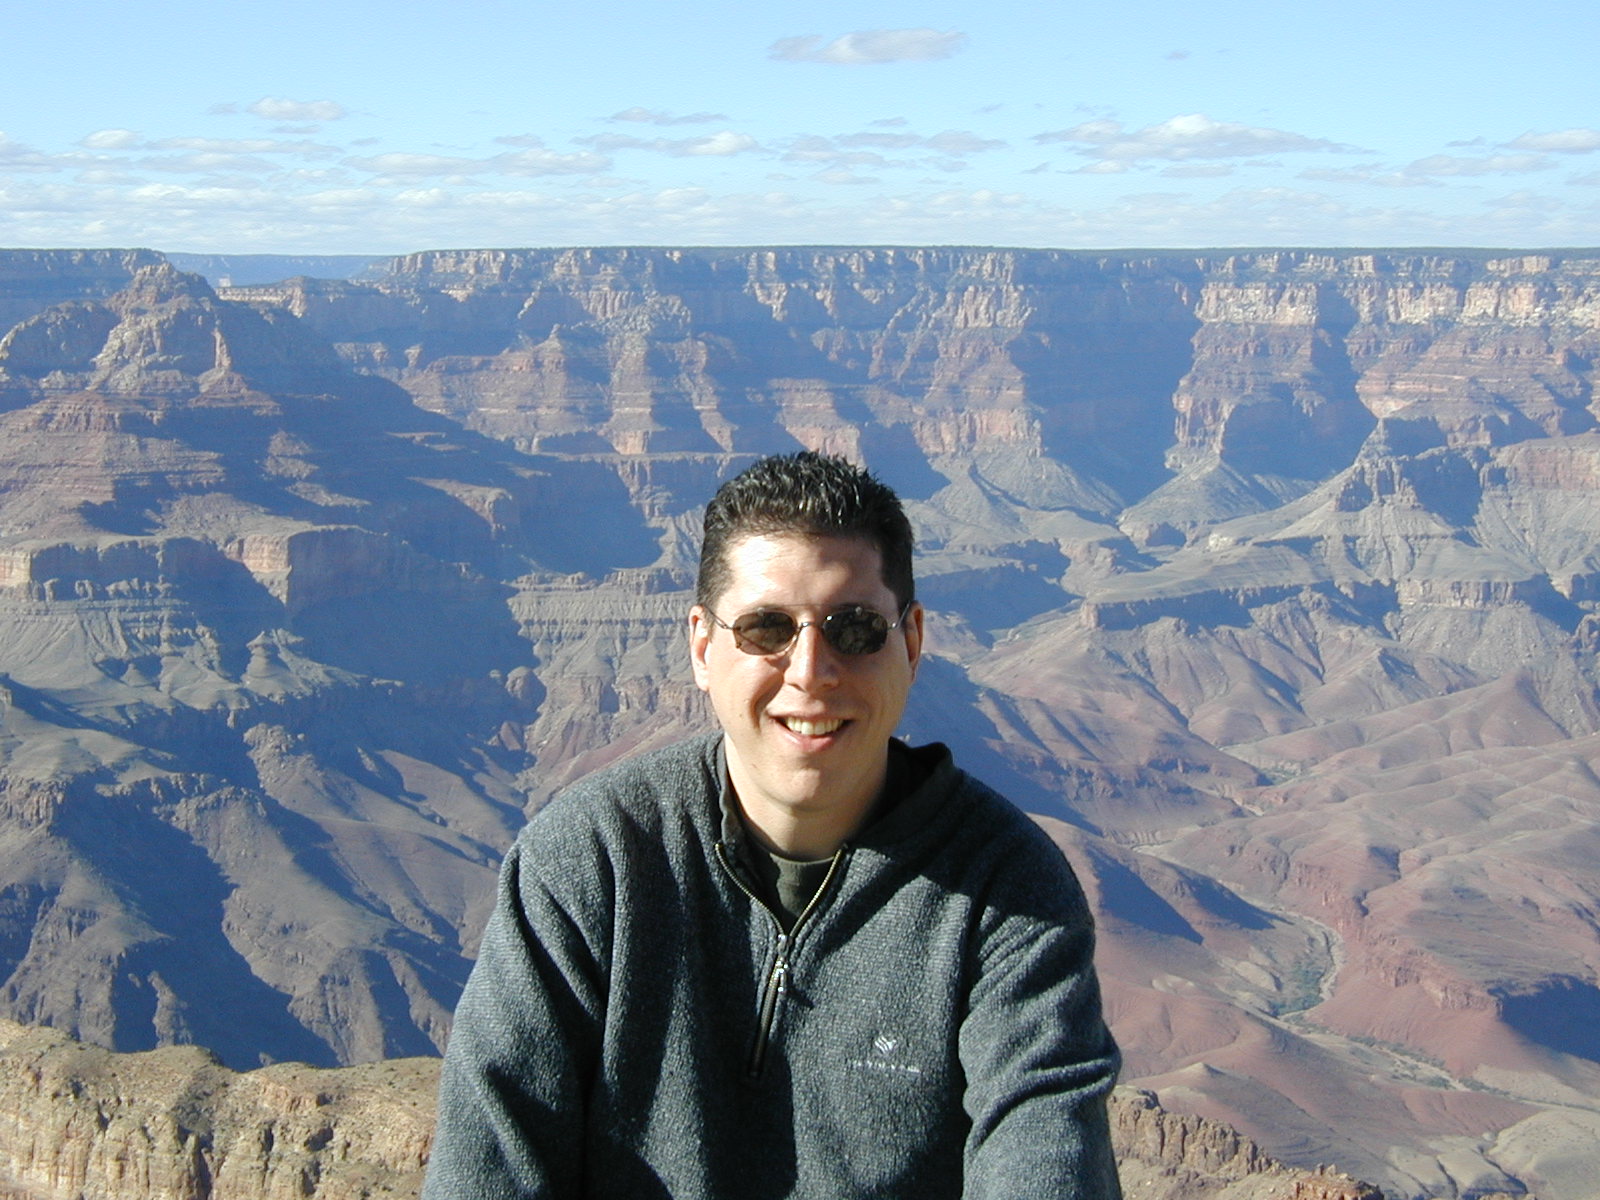 Russ at Grand Canyon